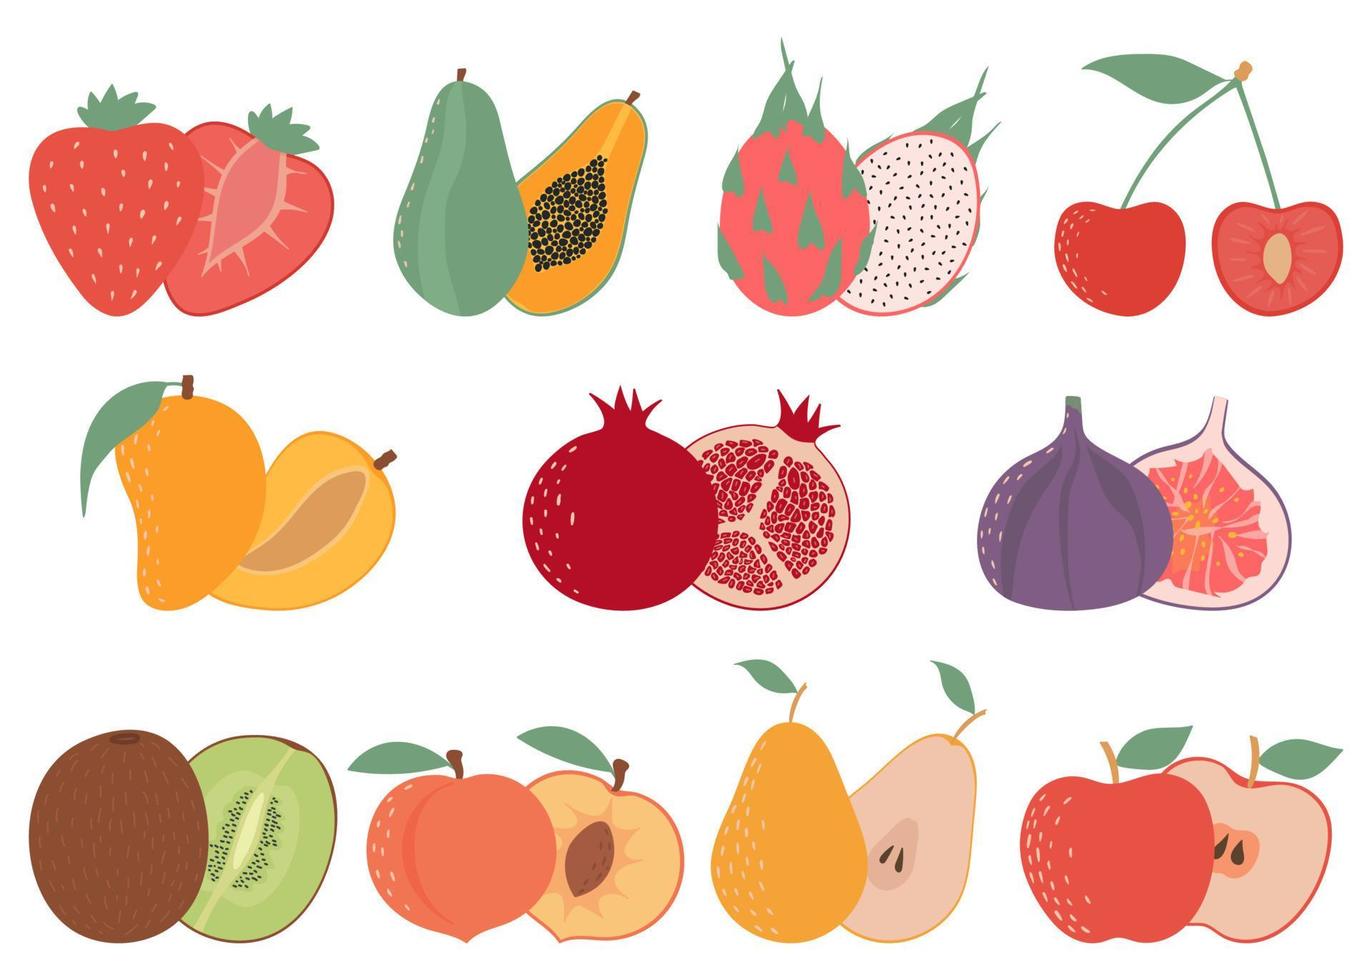 bunte früchte eingestellt, flache designikonensammlung. Erdbeere, Papaya, Drachenfrucht, Mango, Kirsche, Birne, Feige, Granatapfel, Kiwi, Pfirsich, Apfel. vektor